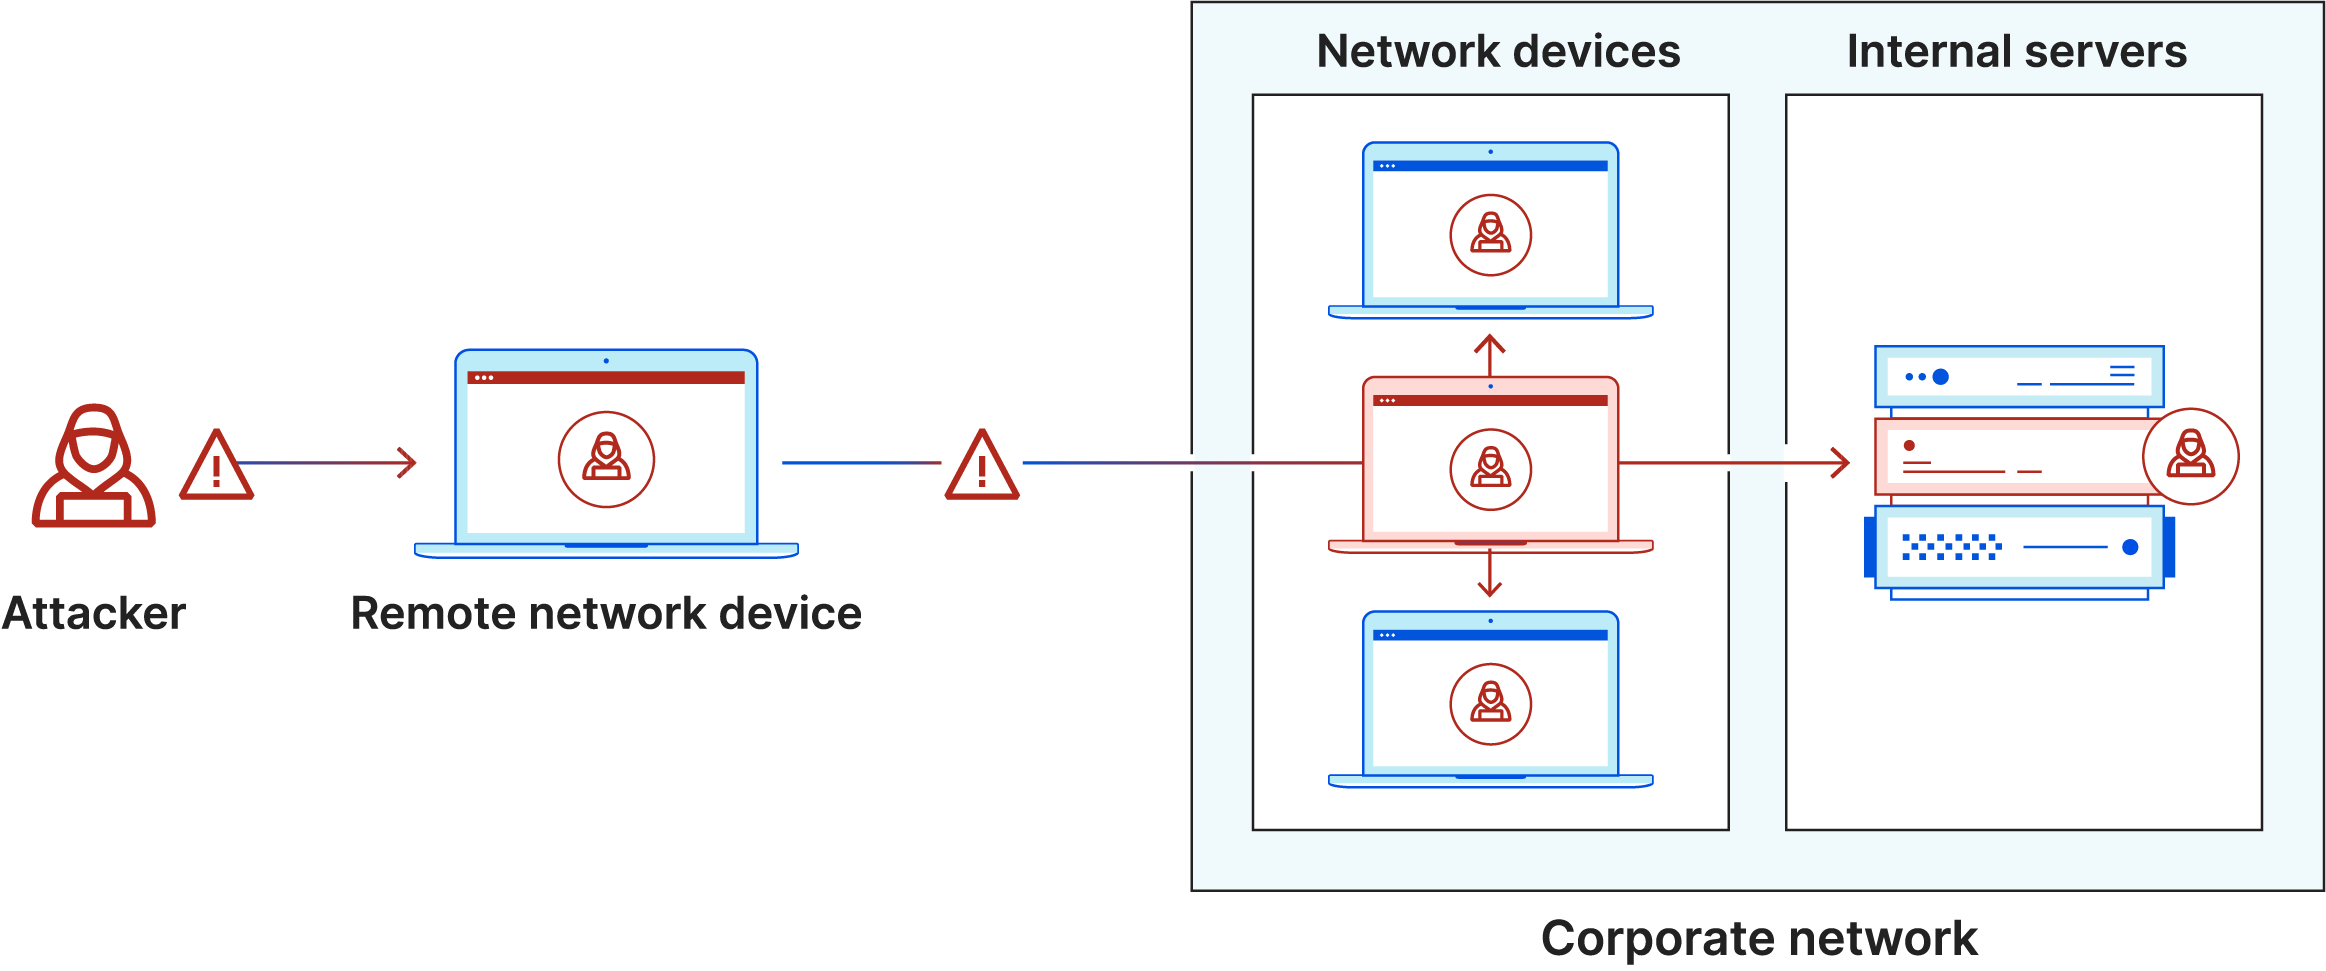 橫向移動圖示。攻擊者感染筆記型電腦，進入安全網路，橫向移動到其他電腦和伺服器。